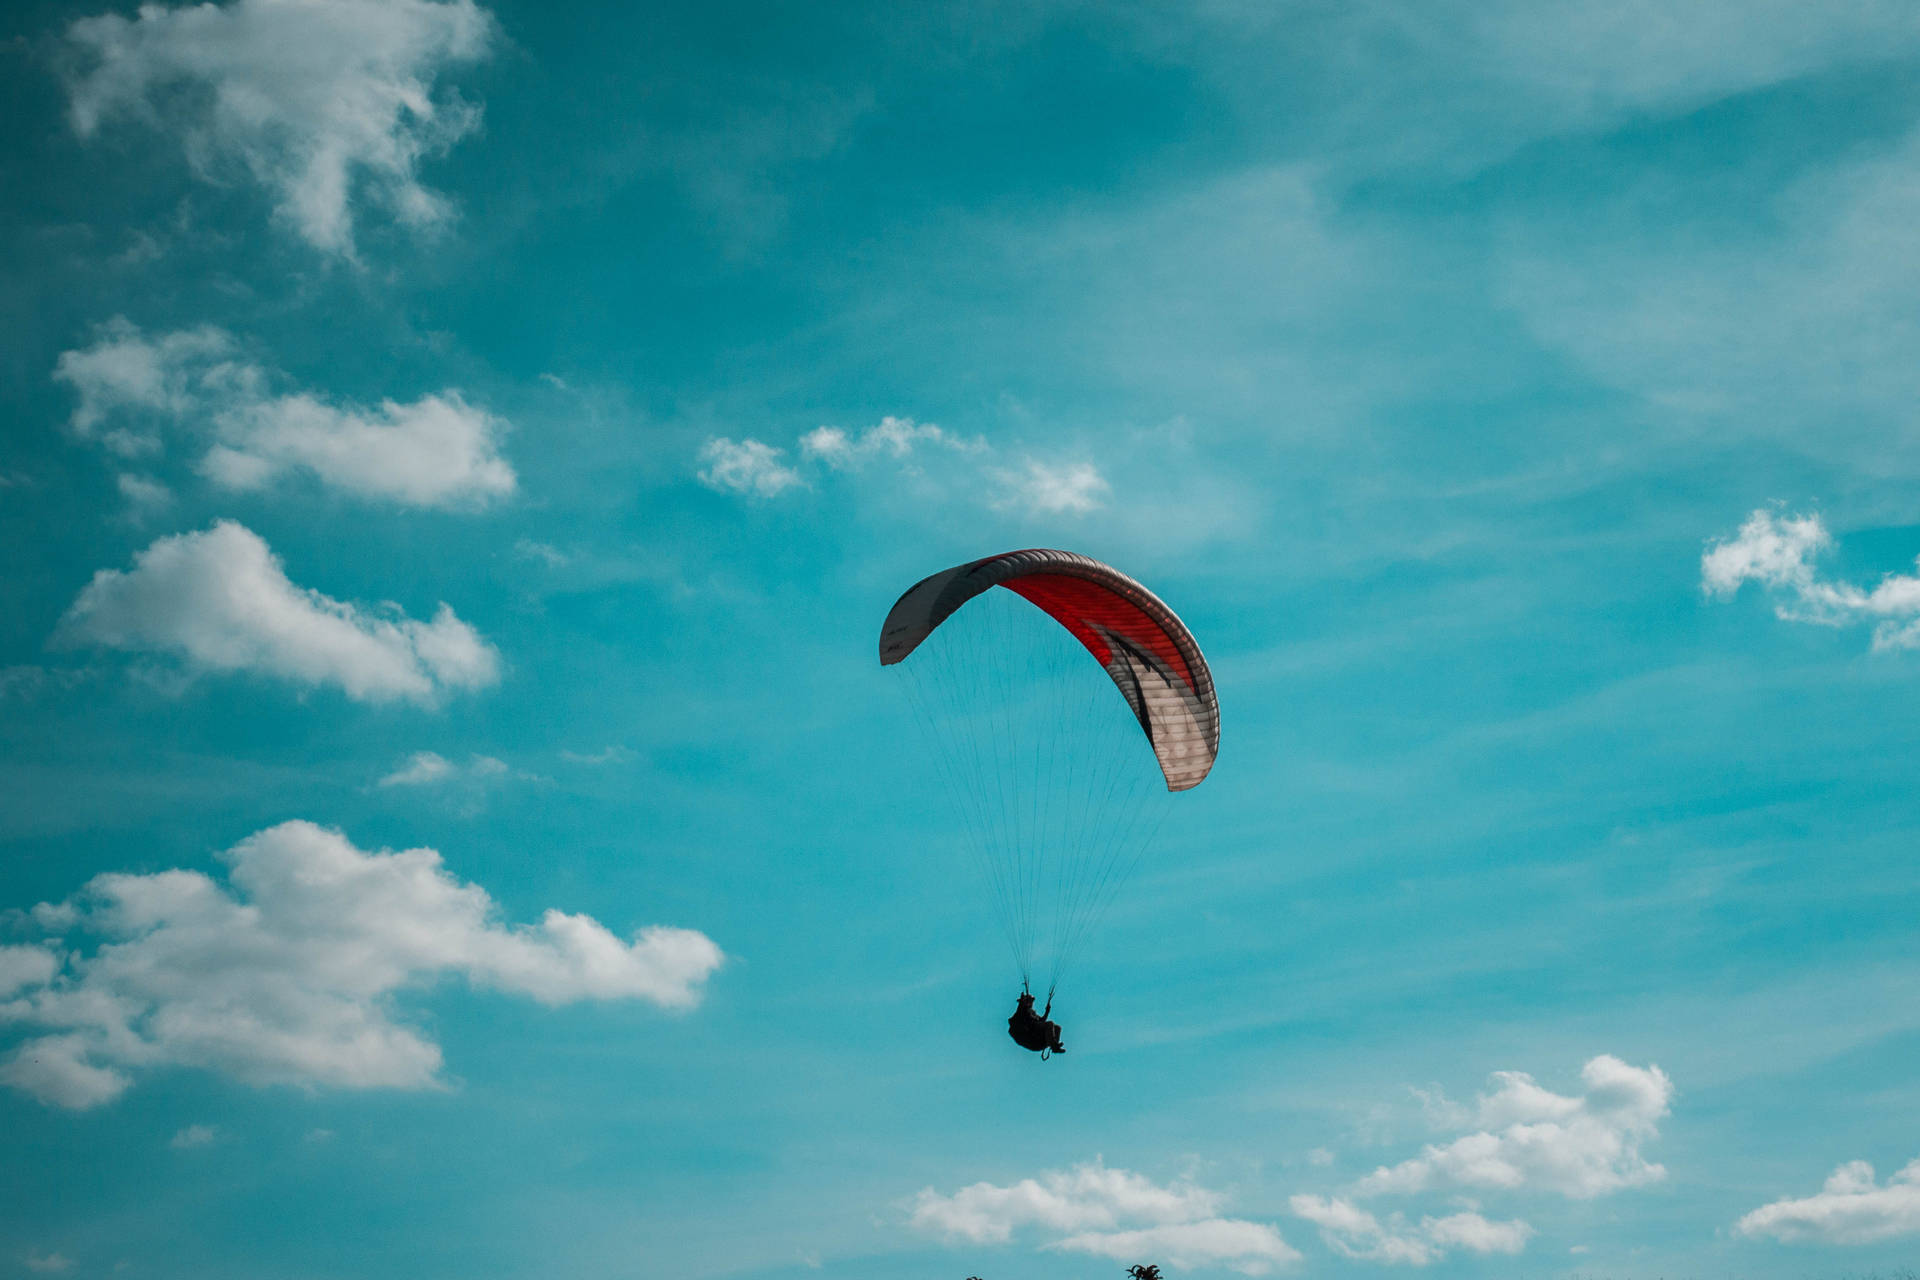 Paraglidinghoch In Den Himmel Wallpaper